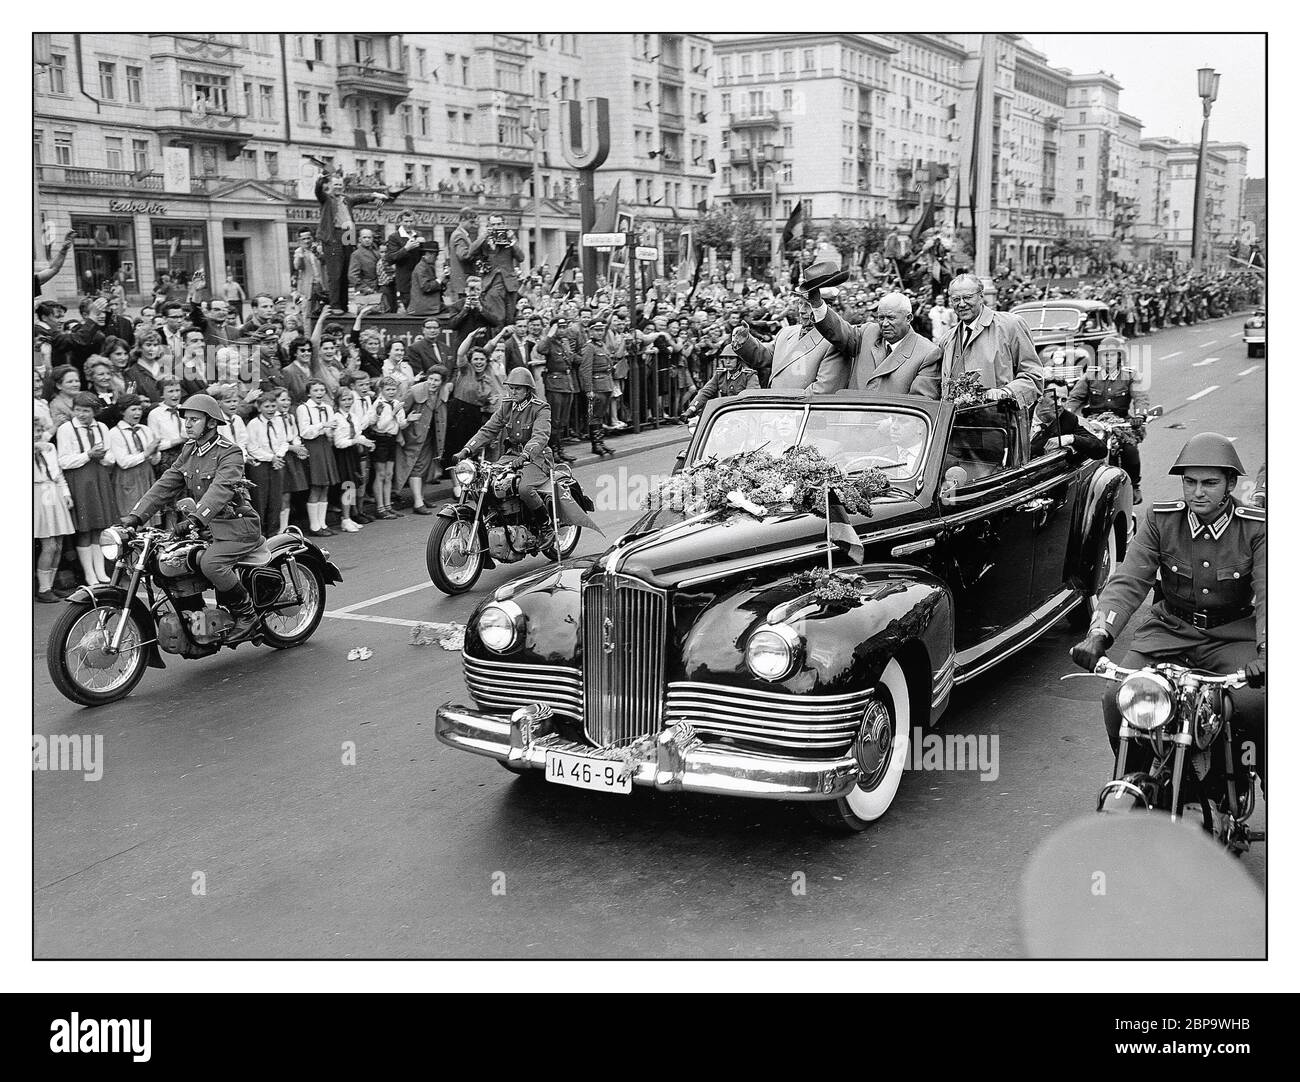 1960 il primo ministro sovietico Nikita Khrushchev in un russo convertibile ZIL-111B a Stalin Allee Berlino Est Germania. La Zil-111 era una limousine prodotta dal costruttore sovietico Zil nel 1958–1967. Fu la prima limousine del dopoguerra progettata nell'Unione Sovietica. Il 21 maggio 1960, Nikita Khrushchev, primo segretario del Partito comunista dell'Unione Sovietica, ha pronunciato un discorso presso l'Arena sportiva di Berlino Est, sotto un cartello che chiedeva la fine delle provocazioni da parte degli Stati Uniti e della Repubblica federale di Germania (FRG); e per il disarmo generale. Foto Stock